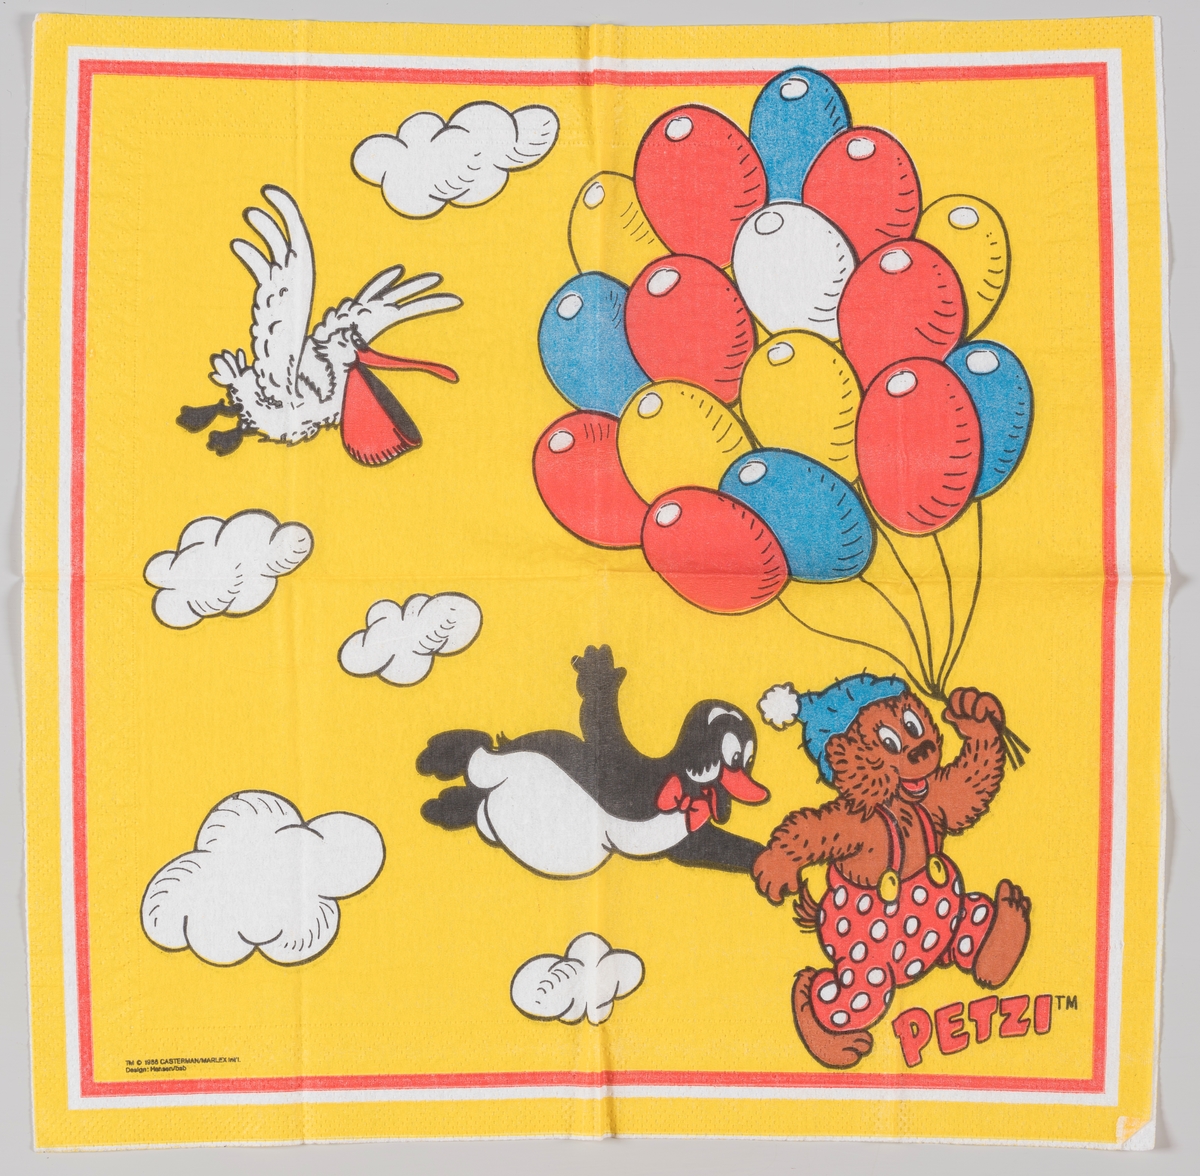 Rasmus Klump, pingvinen Pingo og pelikanen Pelle med en masse ballonger

Rasmus Klump er en dansk tegneserie som kom i 1951. Rasmus Klump heter Petzi på fransk, tysk, italiensk og portugisisk.